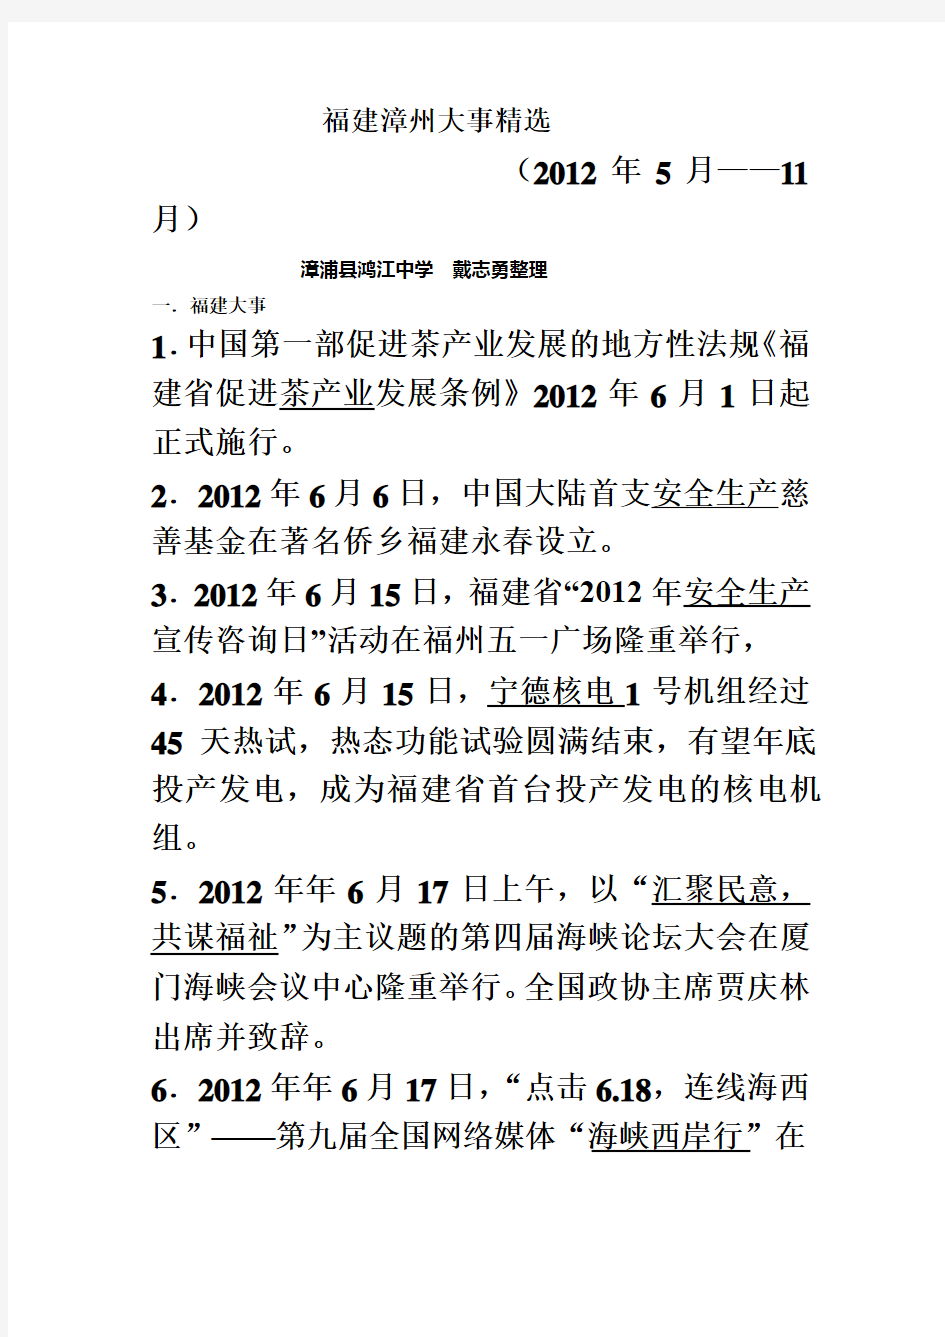 2012福建漳州新闻